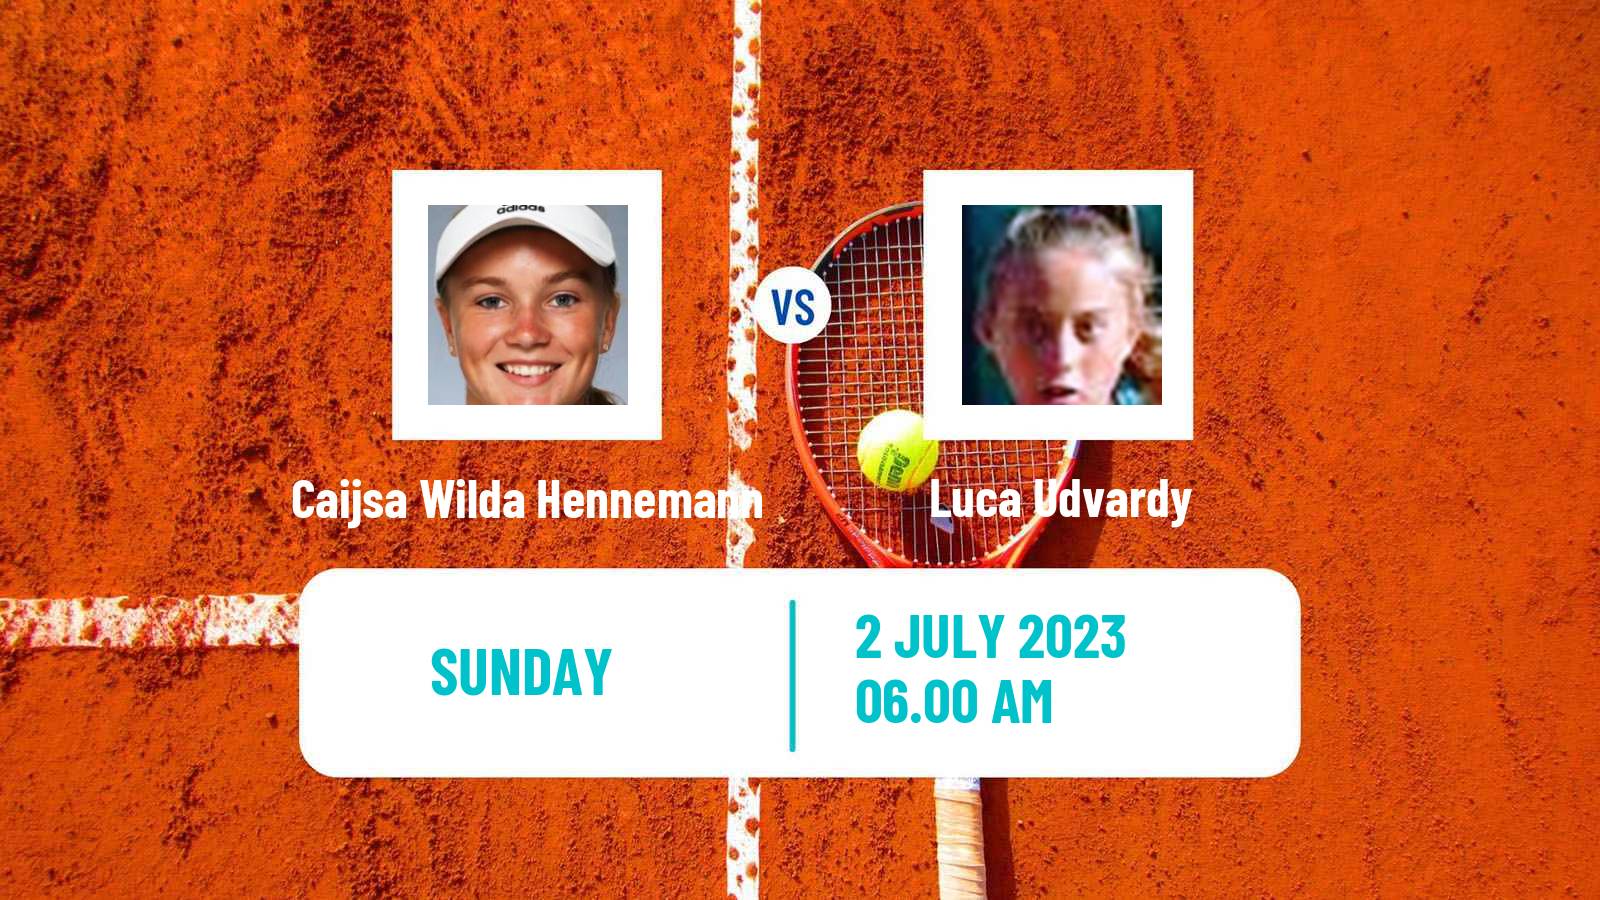 Tennis ITF W15 Alkmaar Women Caijsa Wilda Hennemann - Luca Udvardy